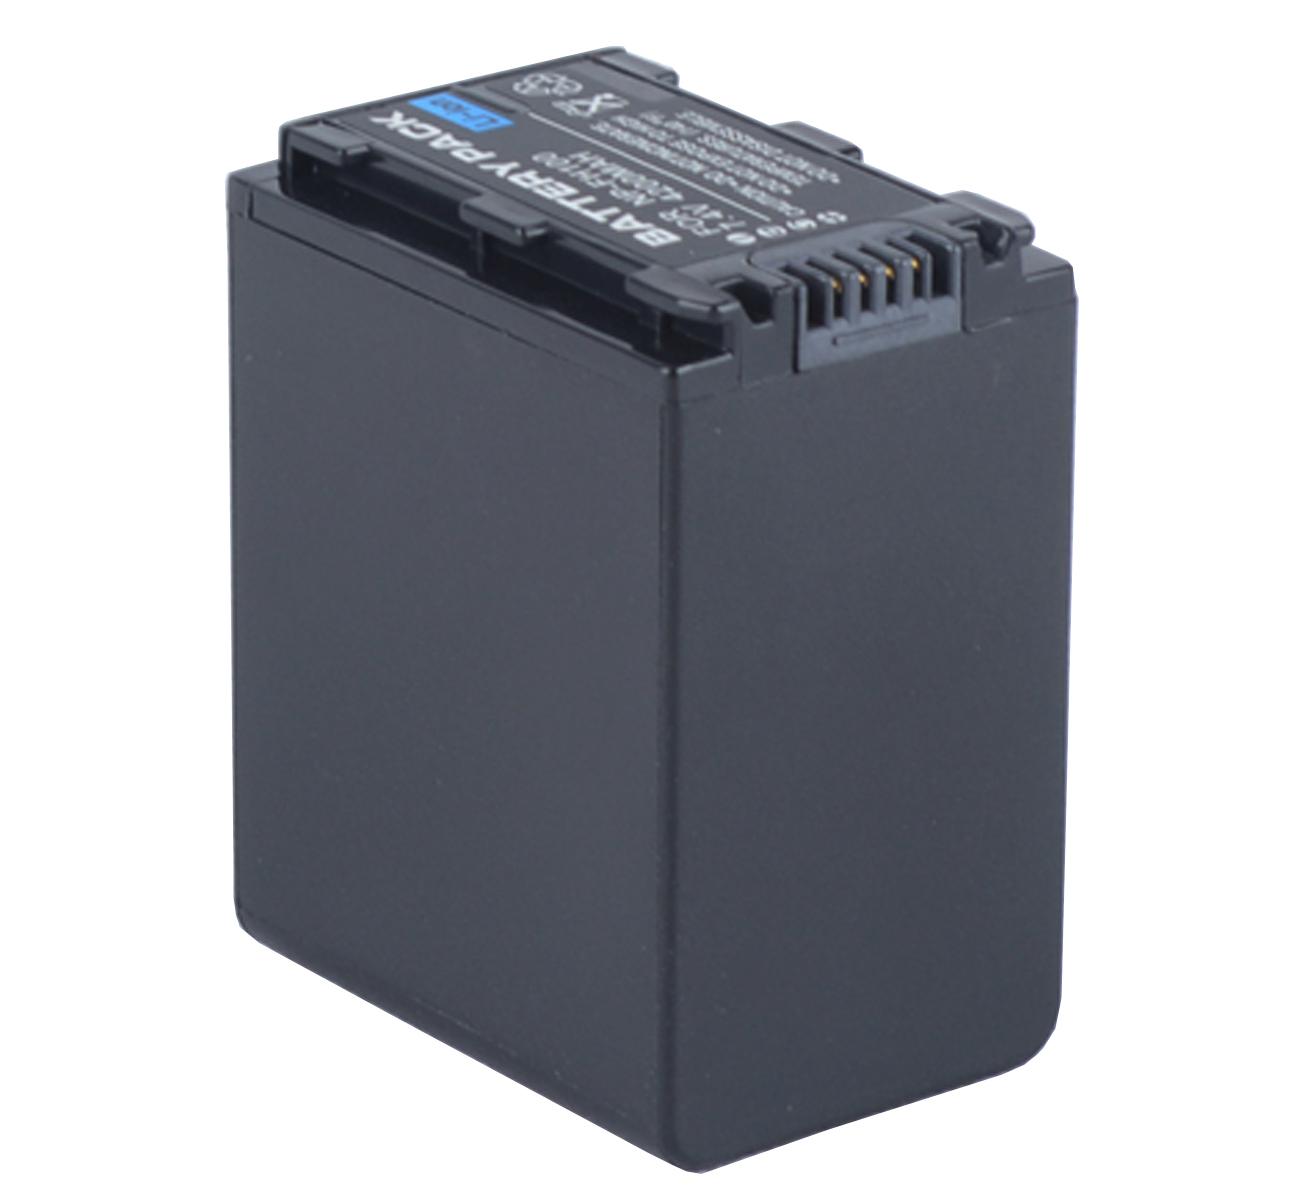 Изображение товара: Батарейный блок для видеокамеры sony DCR-SX30E, DCR-SX31E, DCR-SX40E, DCR-SX41E, DCR-SX50E, DCR-SX60E Handycam